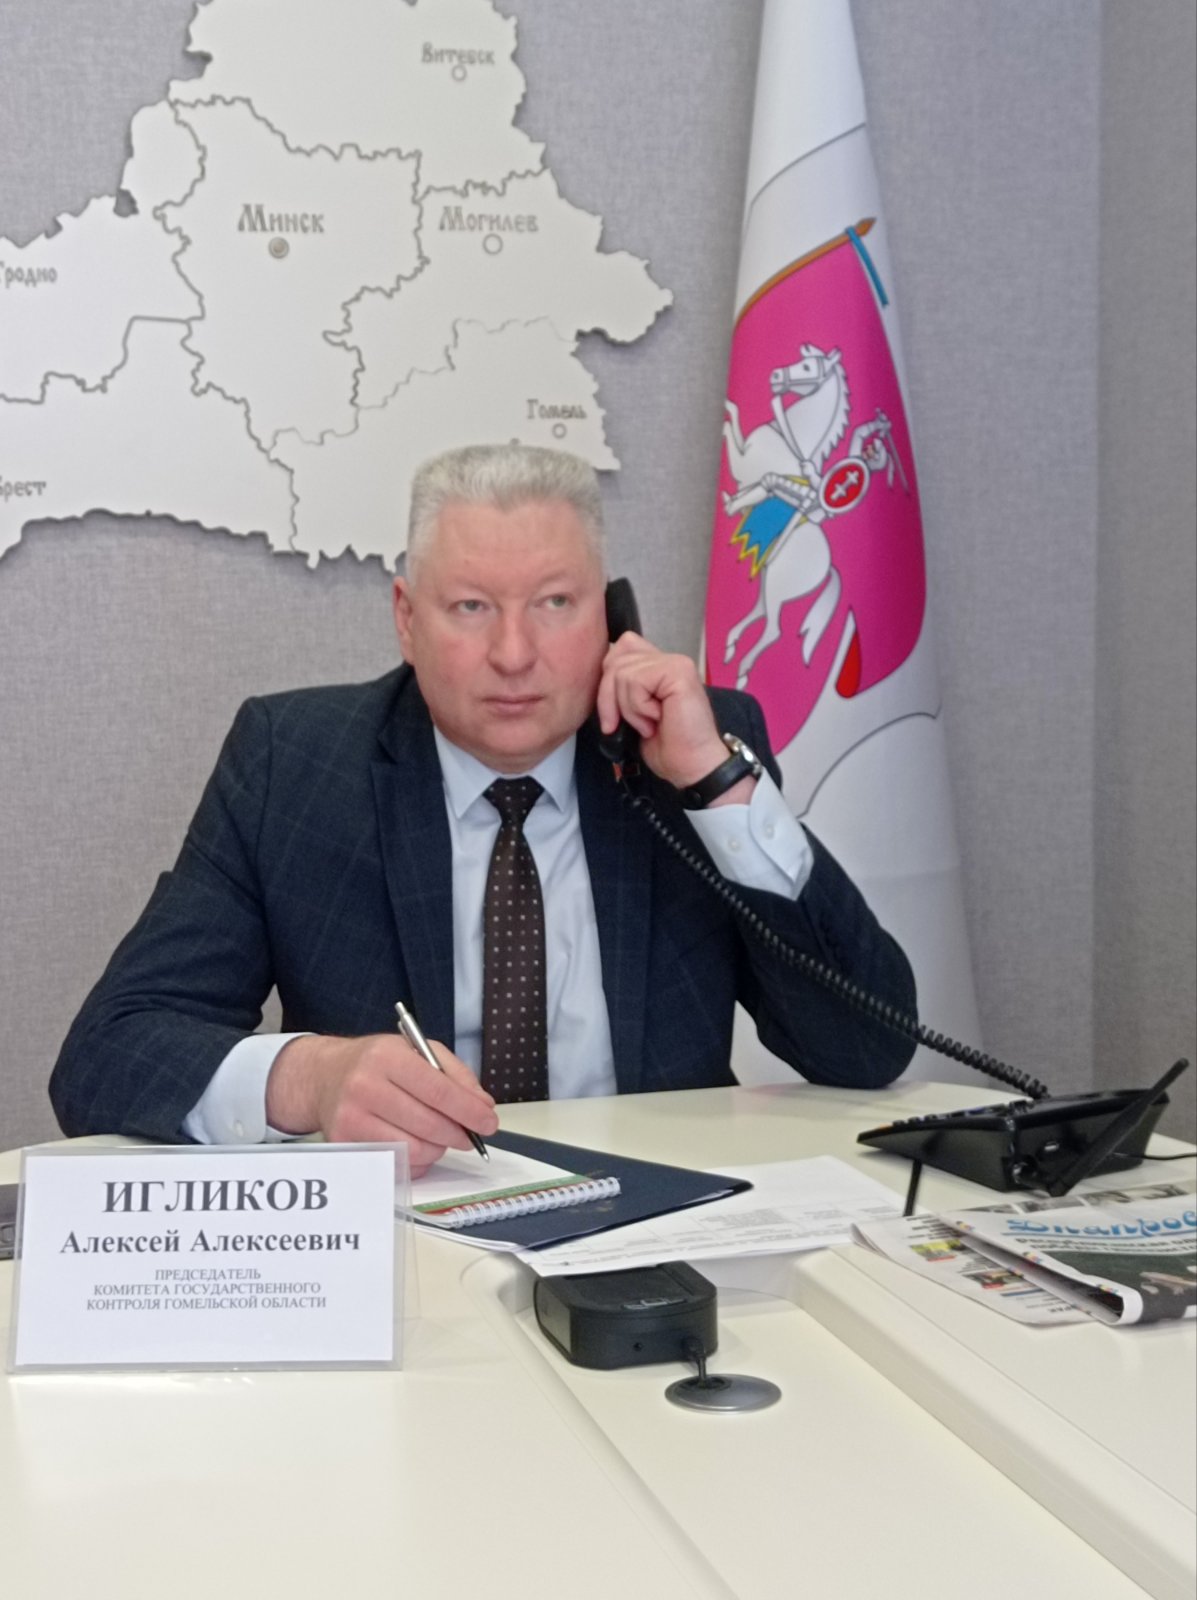 Председатель Комитета государственного контроля Гомельской области Игликов А.А. провел «прямую телефонную линию» и личный прием граждан в Речицком районе